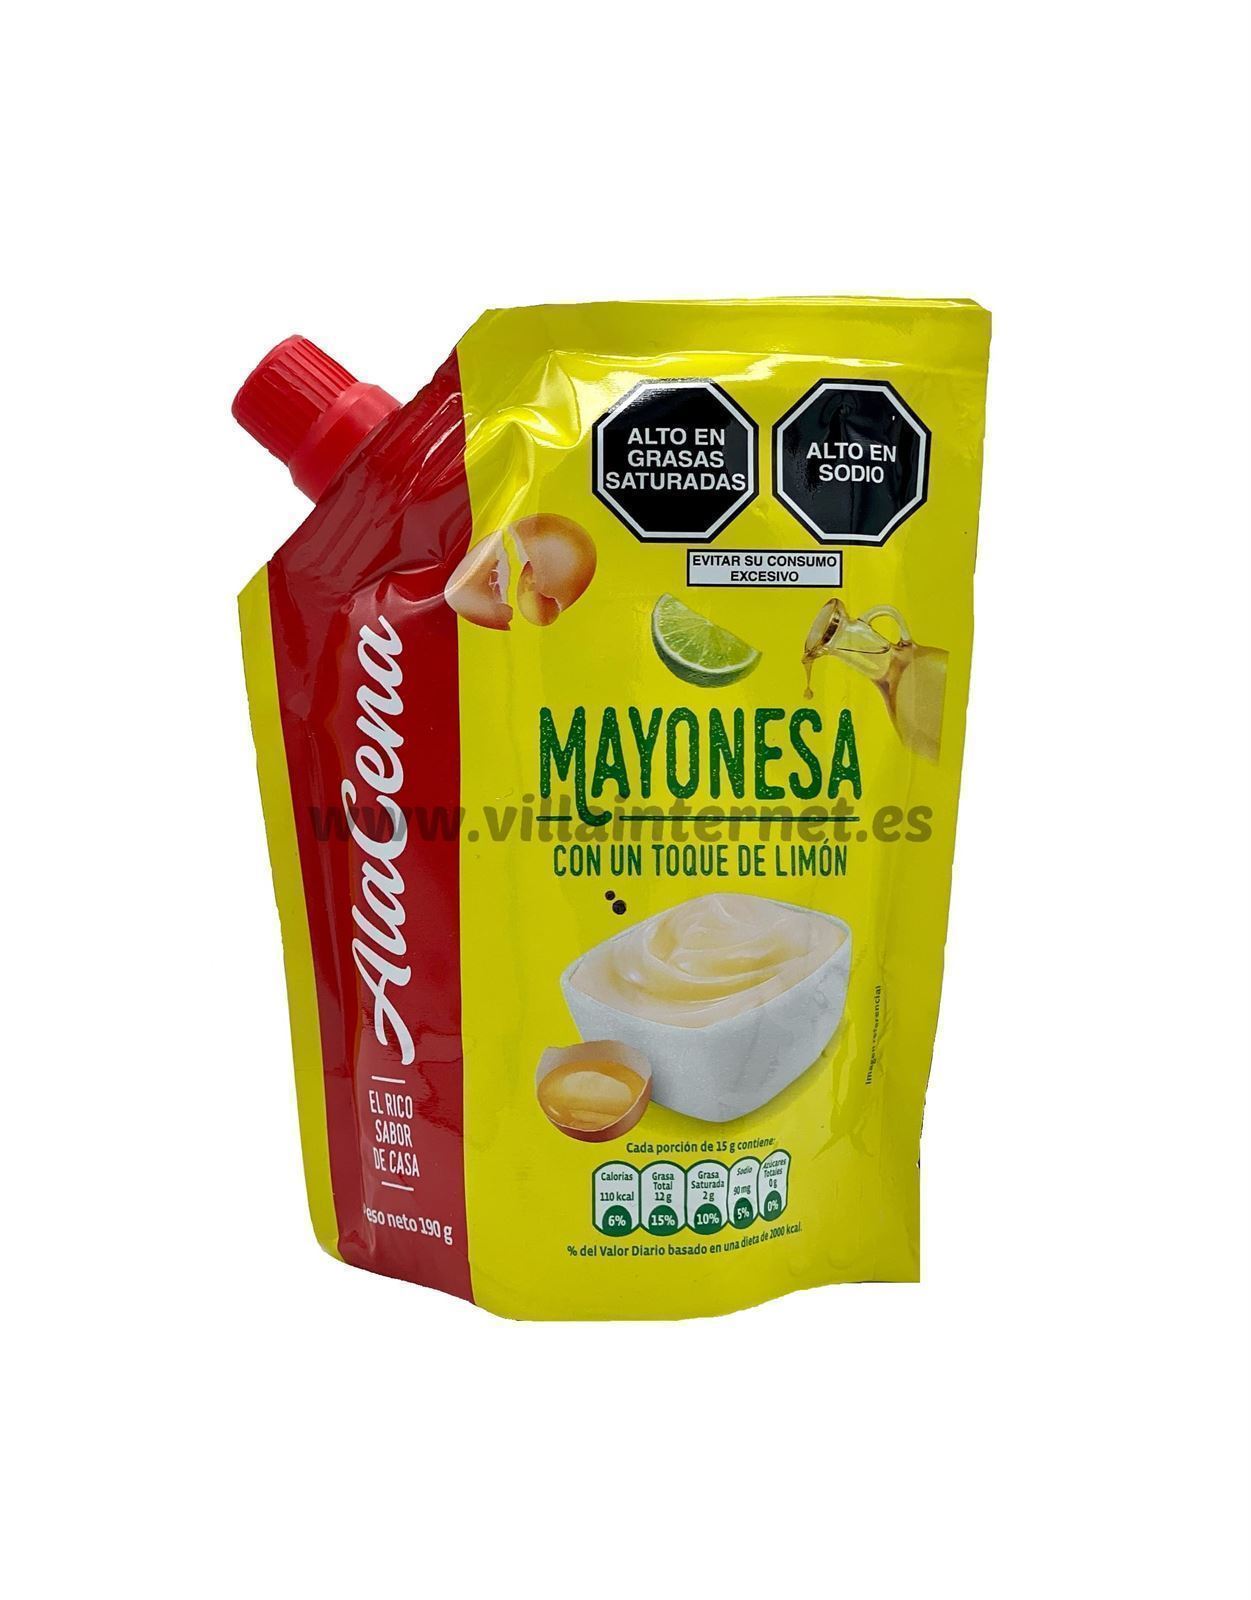 Mayonesa receta casera 190g - Imagen 1